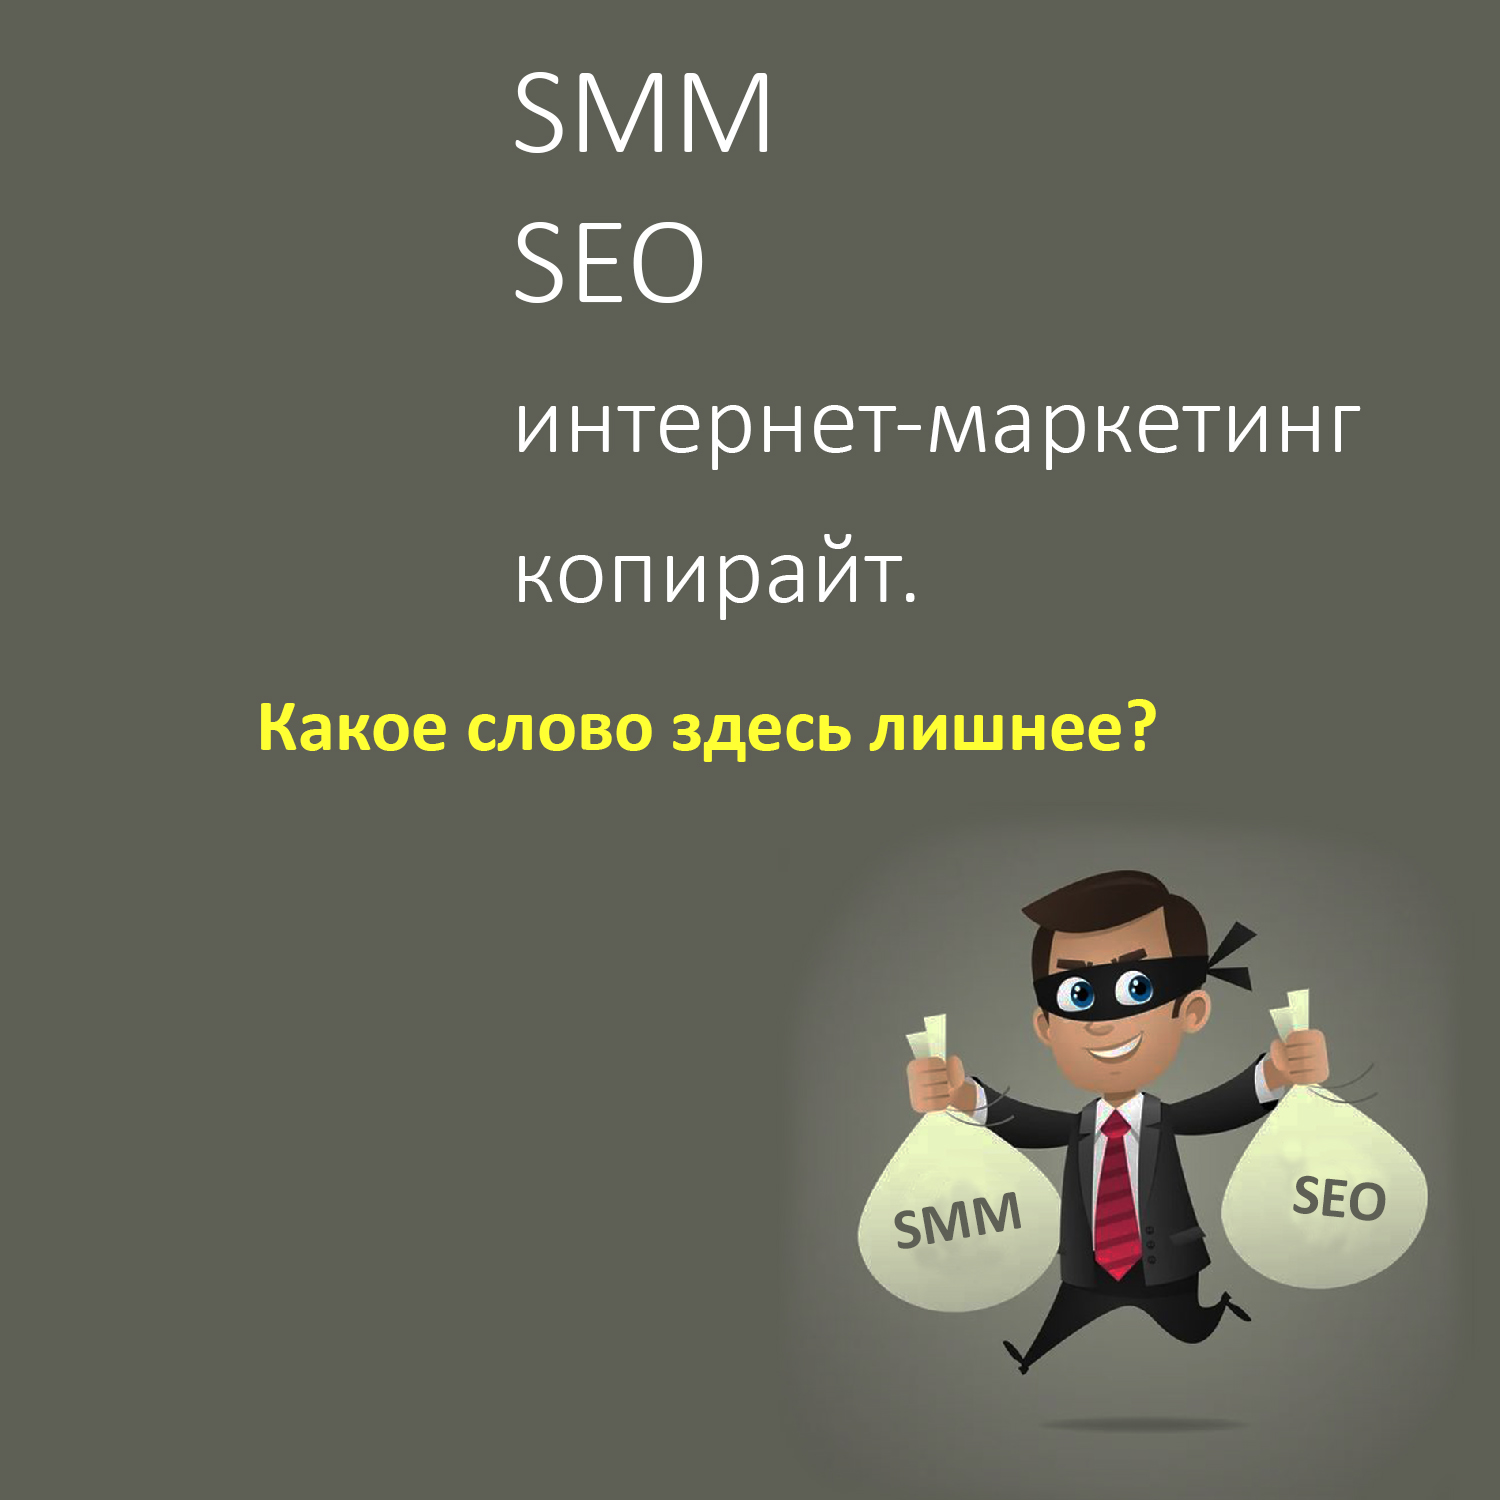 SMM, SEO, интернет-маркетинг, копирайт — какое слово здесь лишнее? Шеф делает вам деловое предложение.